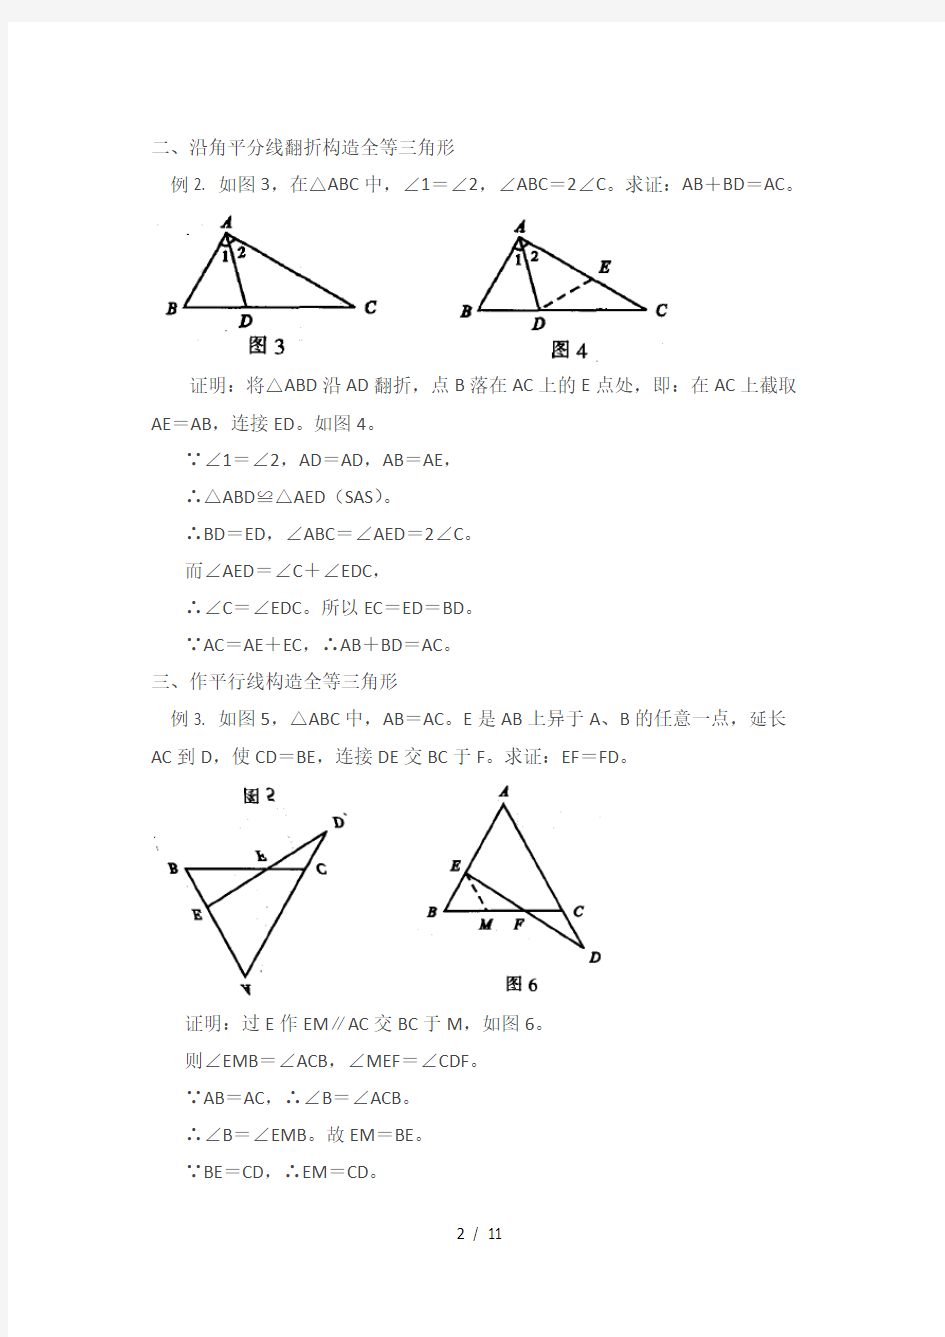 几种证明全等三角形添加辅助线方法